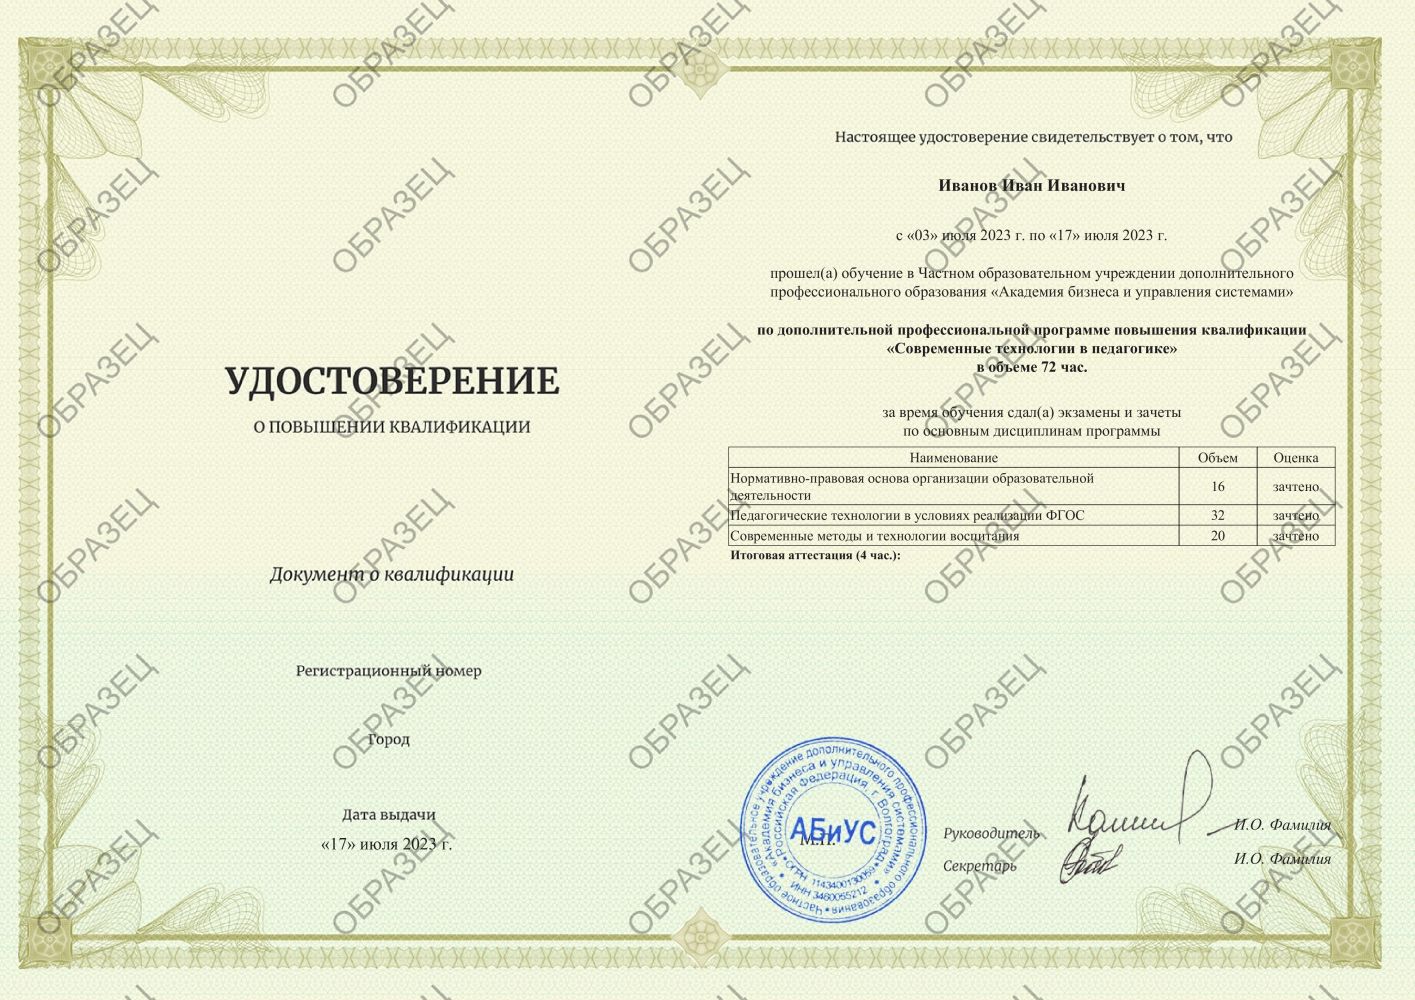 Удостоверение Современные технологии в педагогике 72 часа 2188 руб.